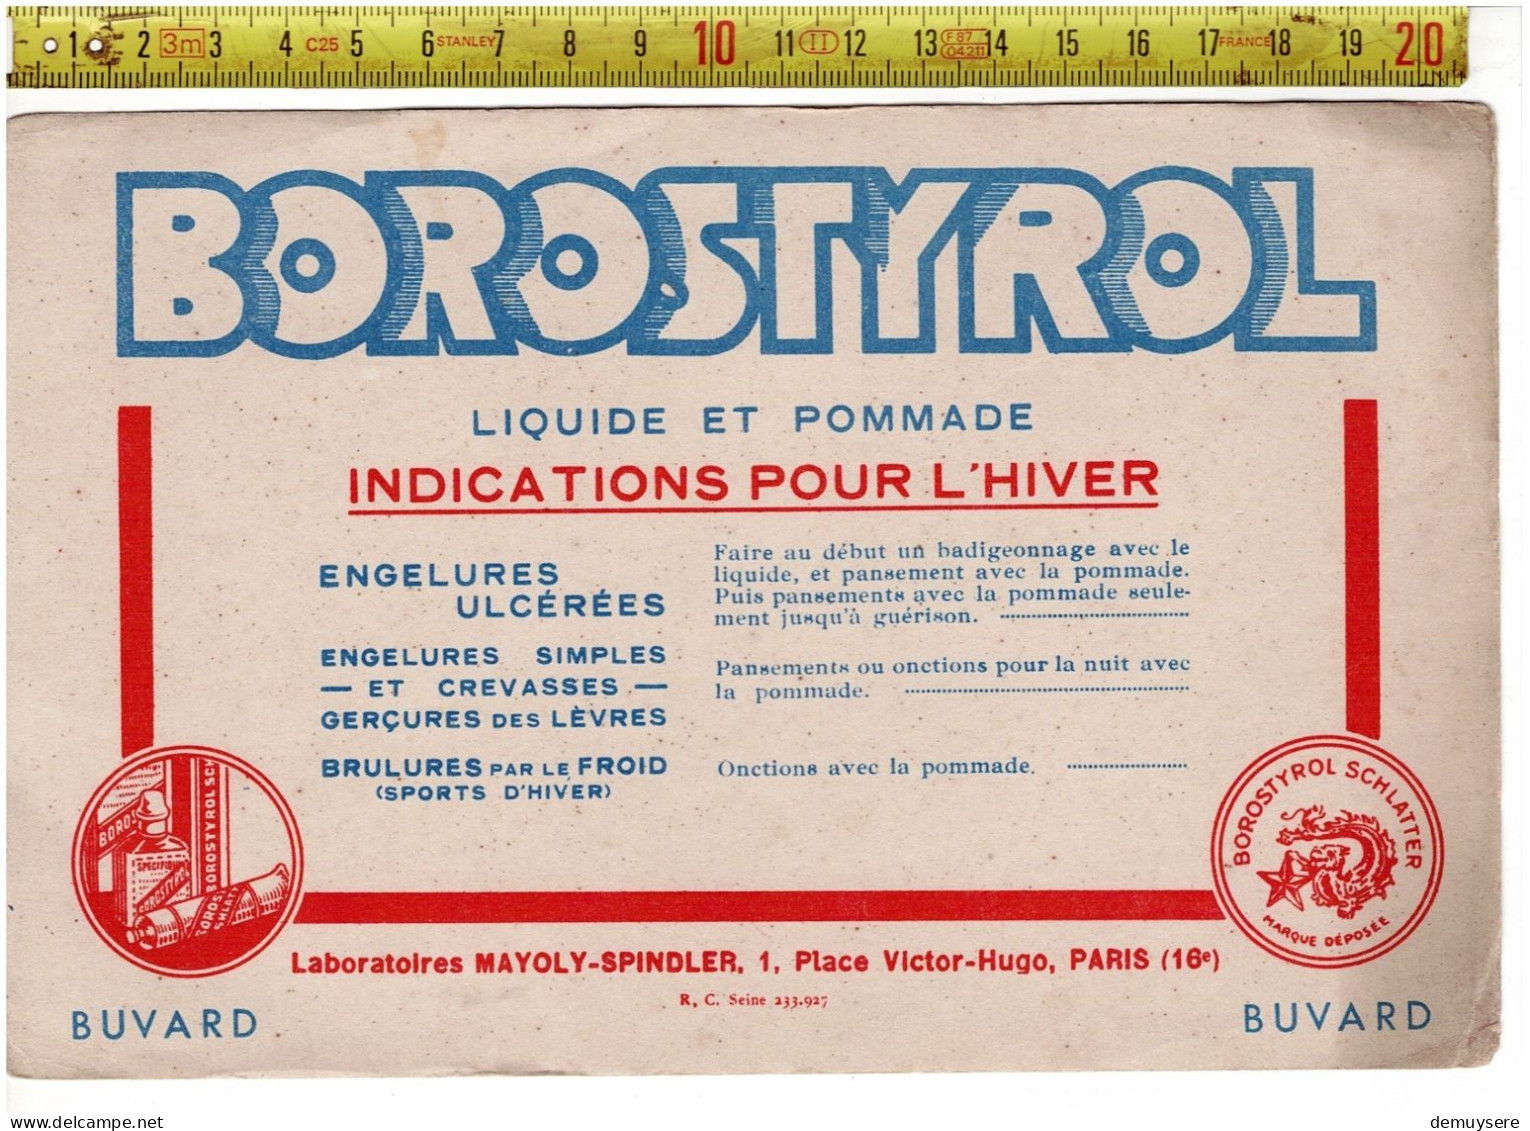 SOLDE 2012 - BUVARD - BOROSTYROL - LIQUIDE ET POMMADE - Chemist's